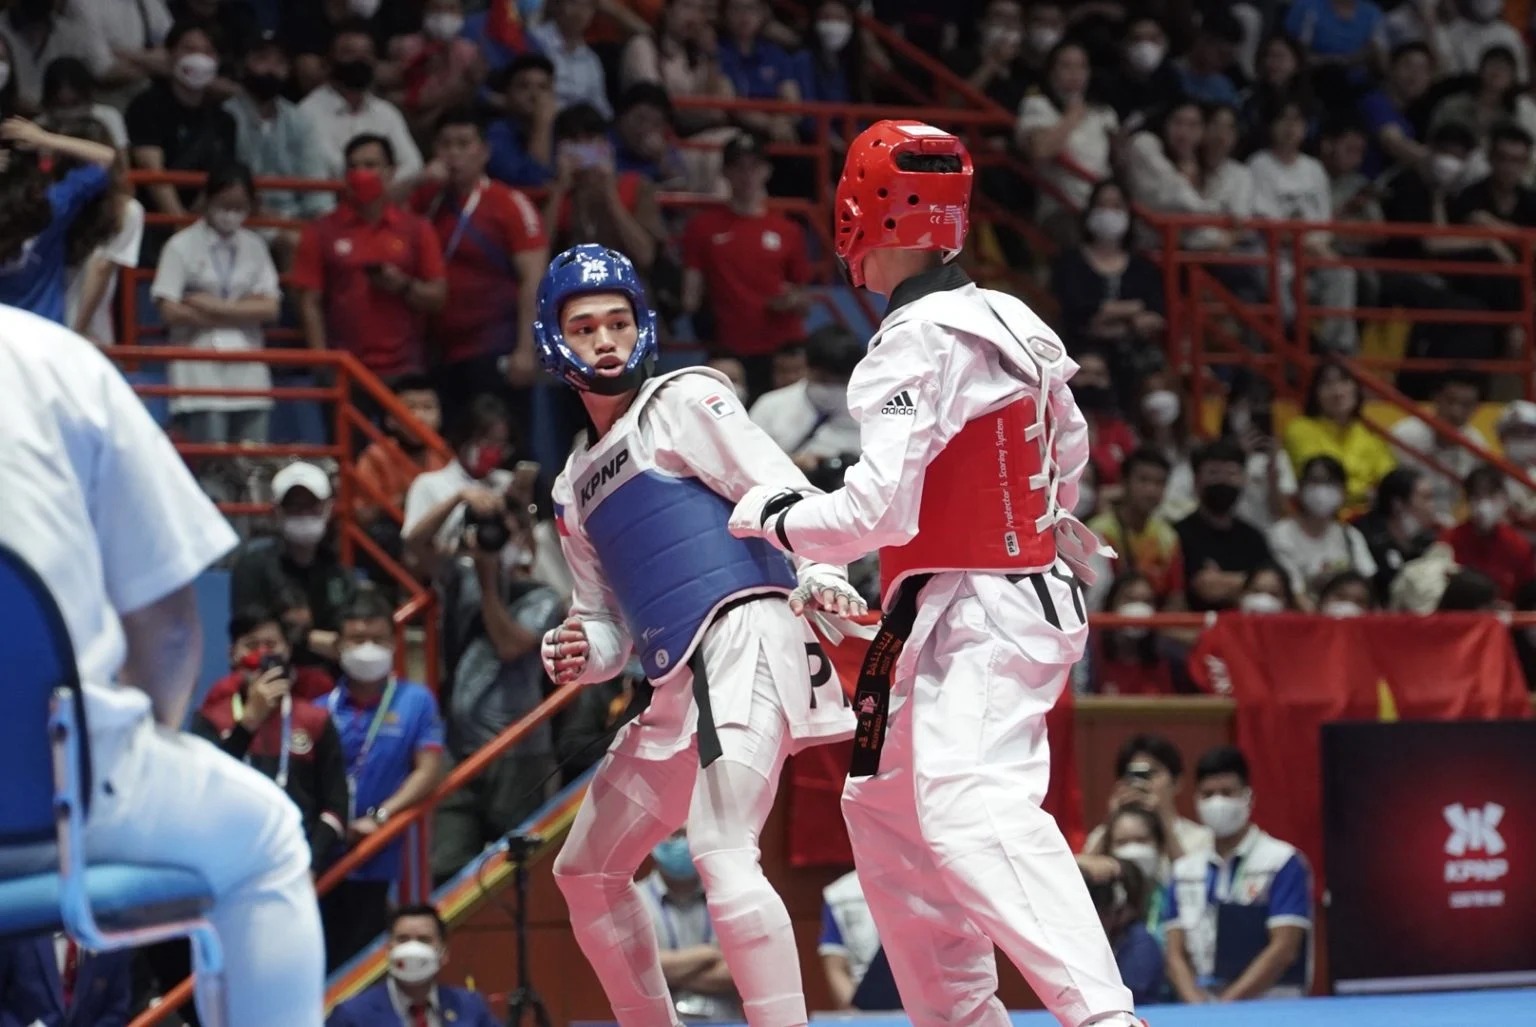 Philippines’ Kurt Barbosa retains taekwondo gold